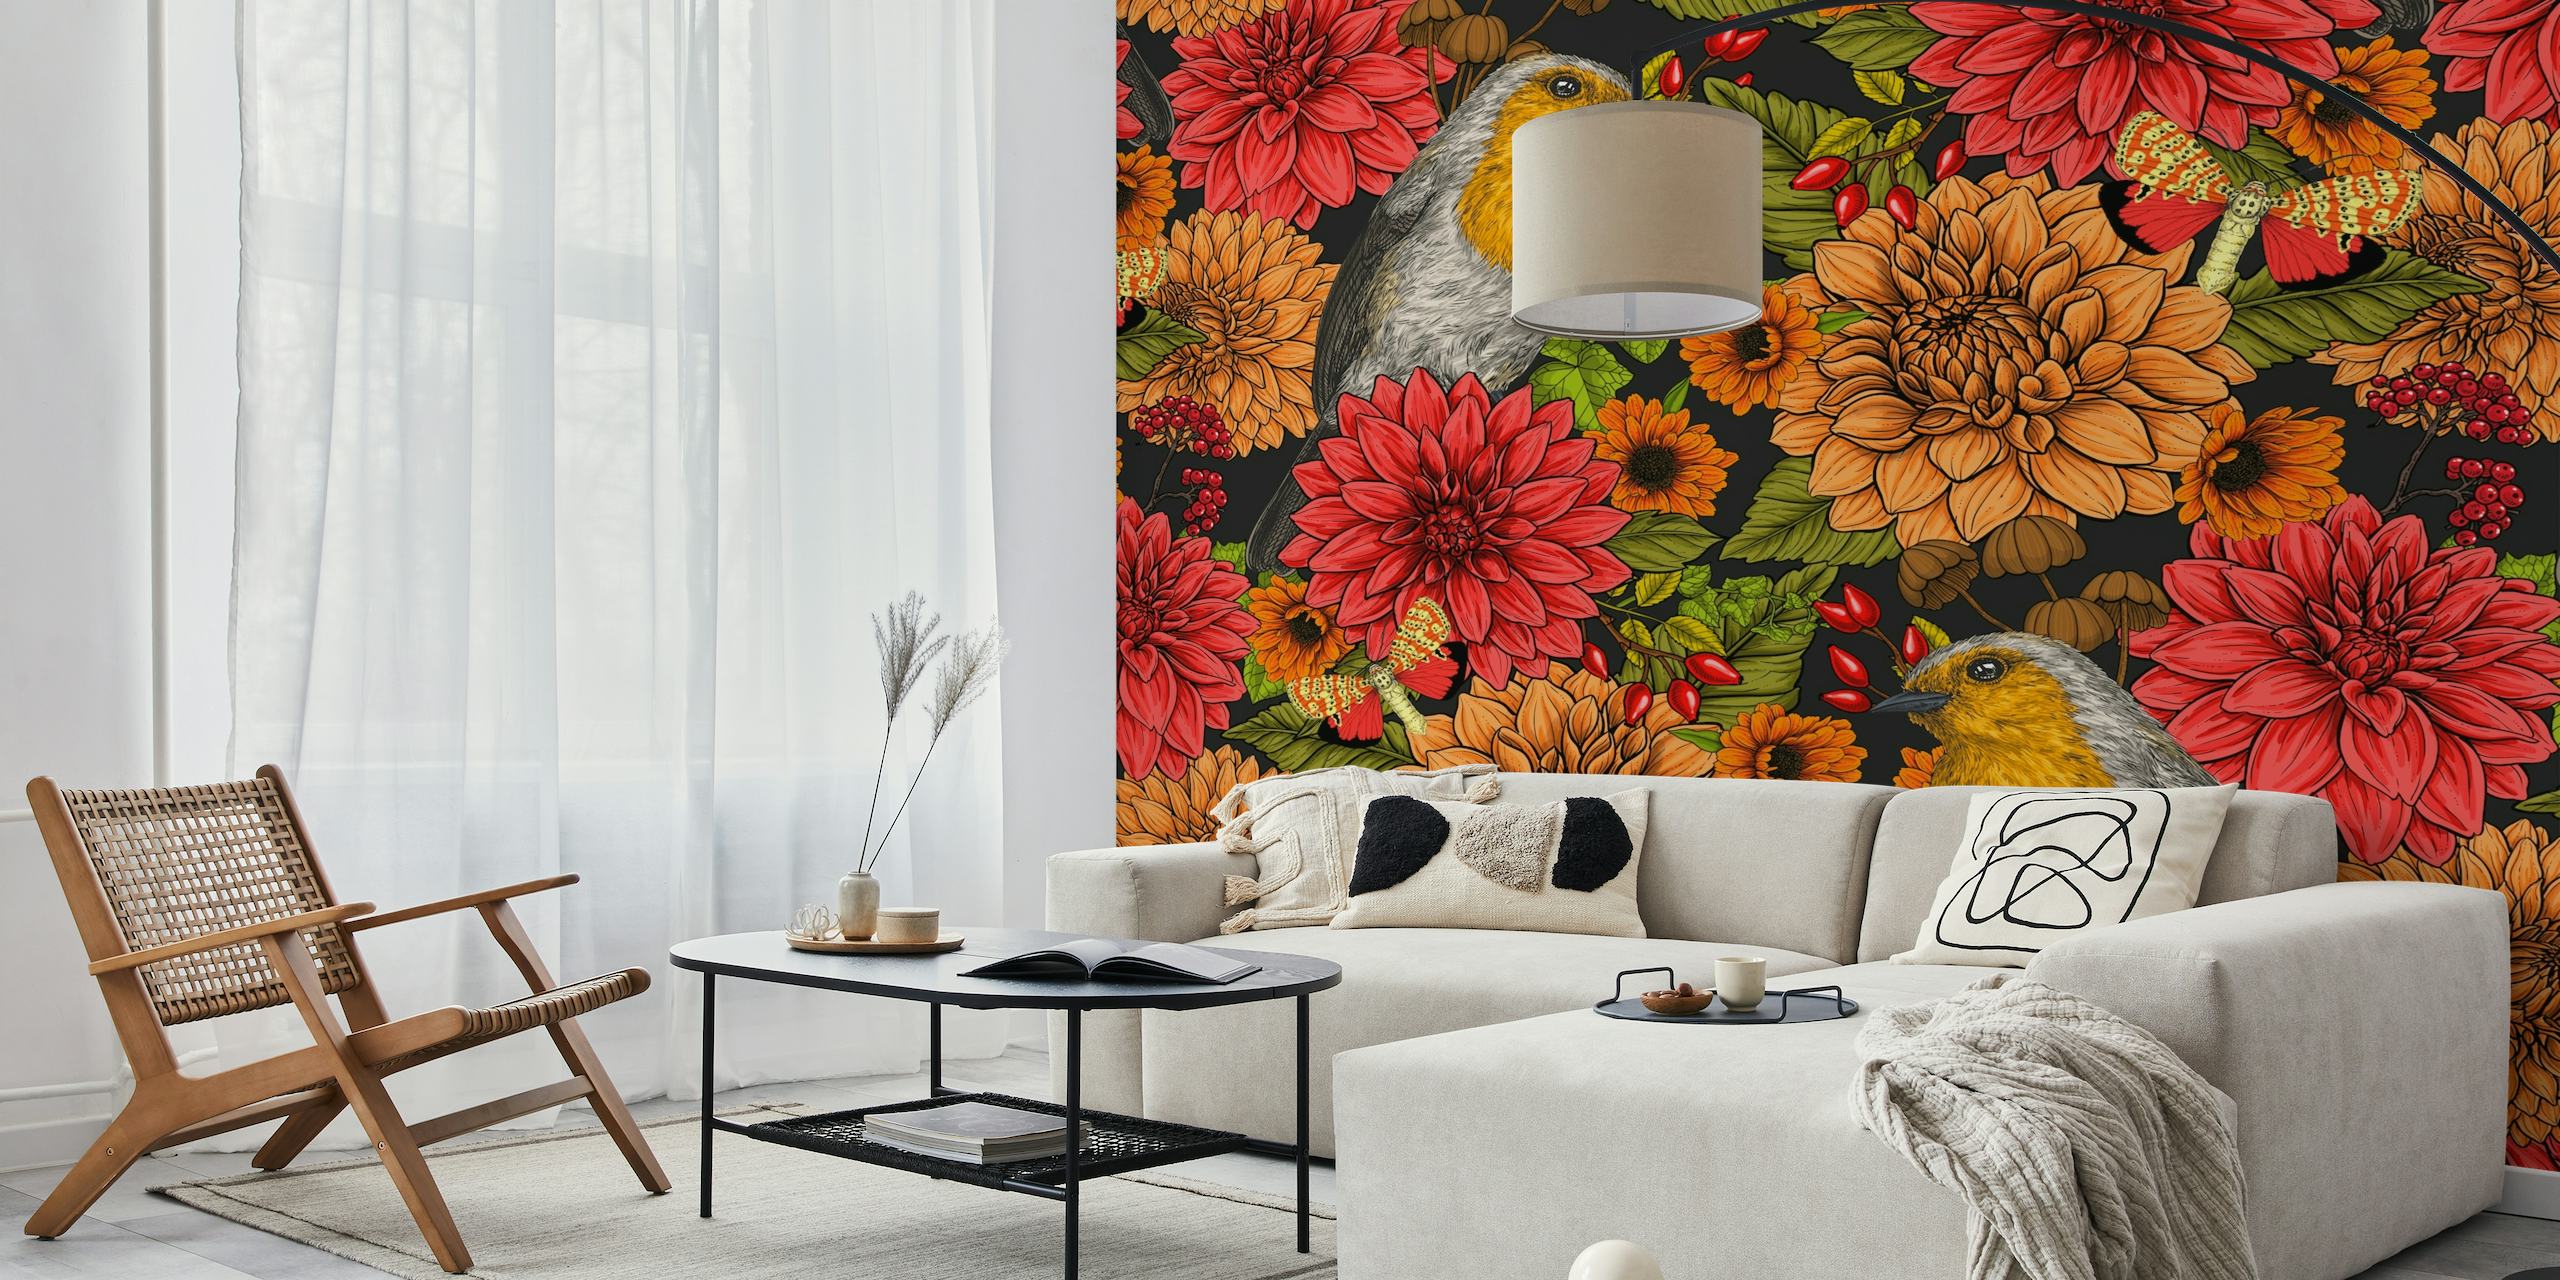 Um mural de parede com tordos e flores coloridas sobre um fundo escuro, criando uma cena animada de jardim.